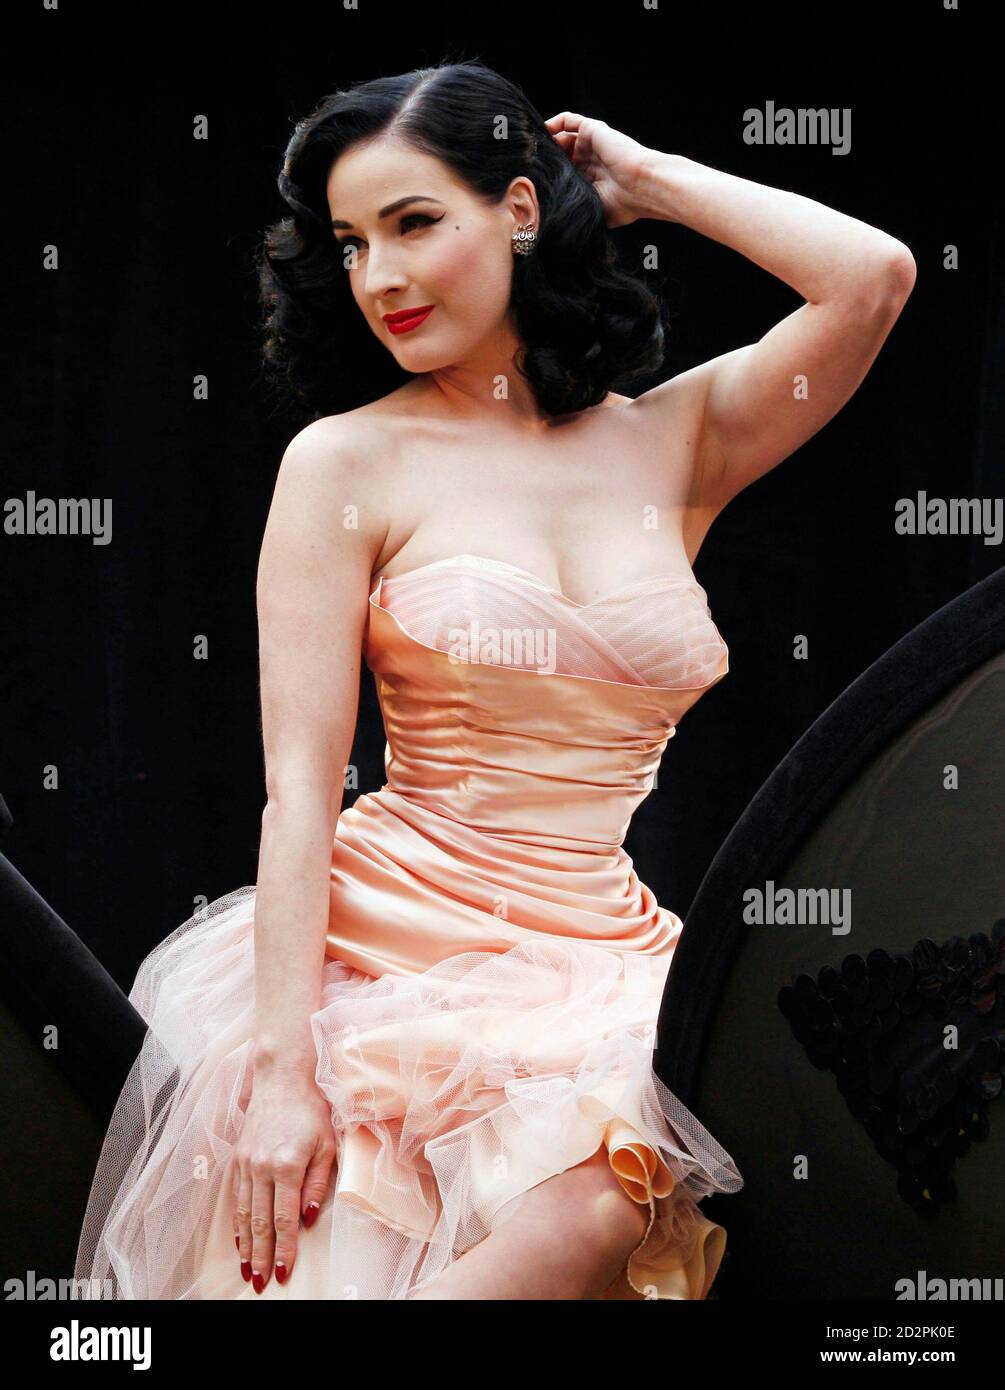 La bailarina de burlesque Dita Von Teese posará durante un fotociclo para  promover su nueva colección Wonderbra en Londres el 23 de septiembre de  2008. REUTERS/Stephen Hird (GRAN BRETAÑA Fotografía de stock -